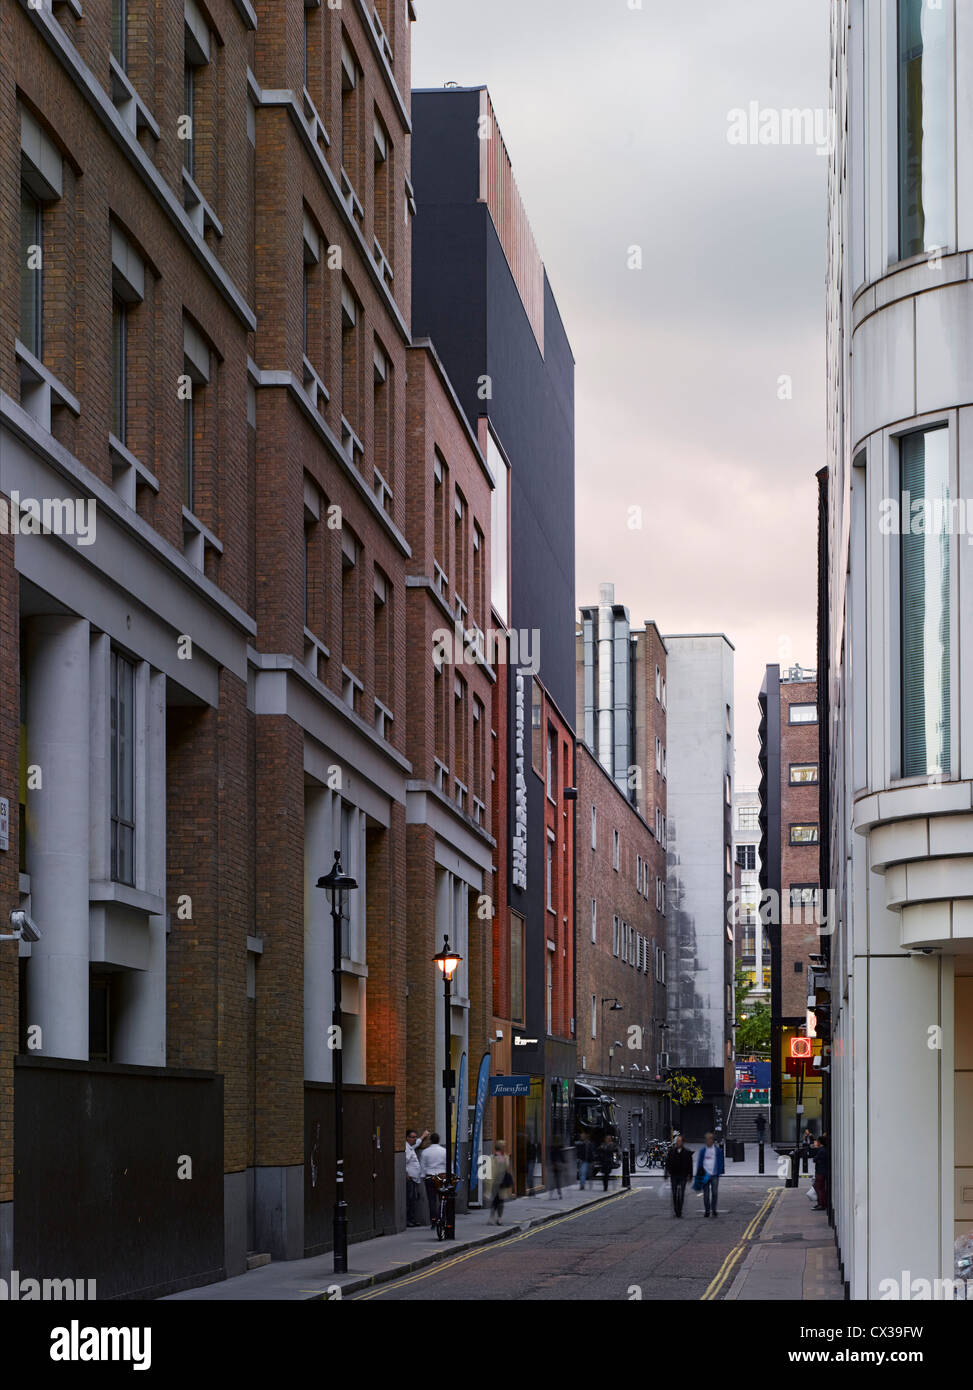 Photographers' Gallery, Londres, Royaume-Uni. Architecte : O'Donnell et Tuomey et ADP, 2012. Perspective de la rue de south sho Banque D'Images